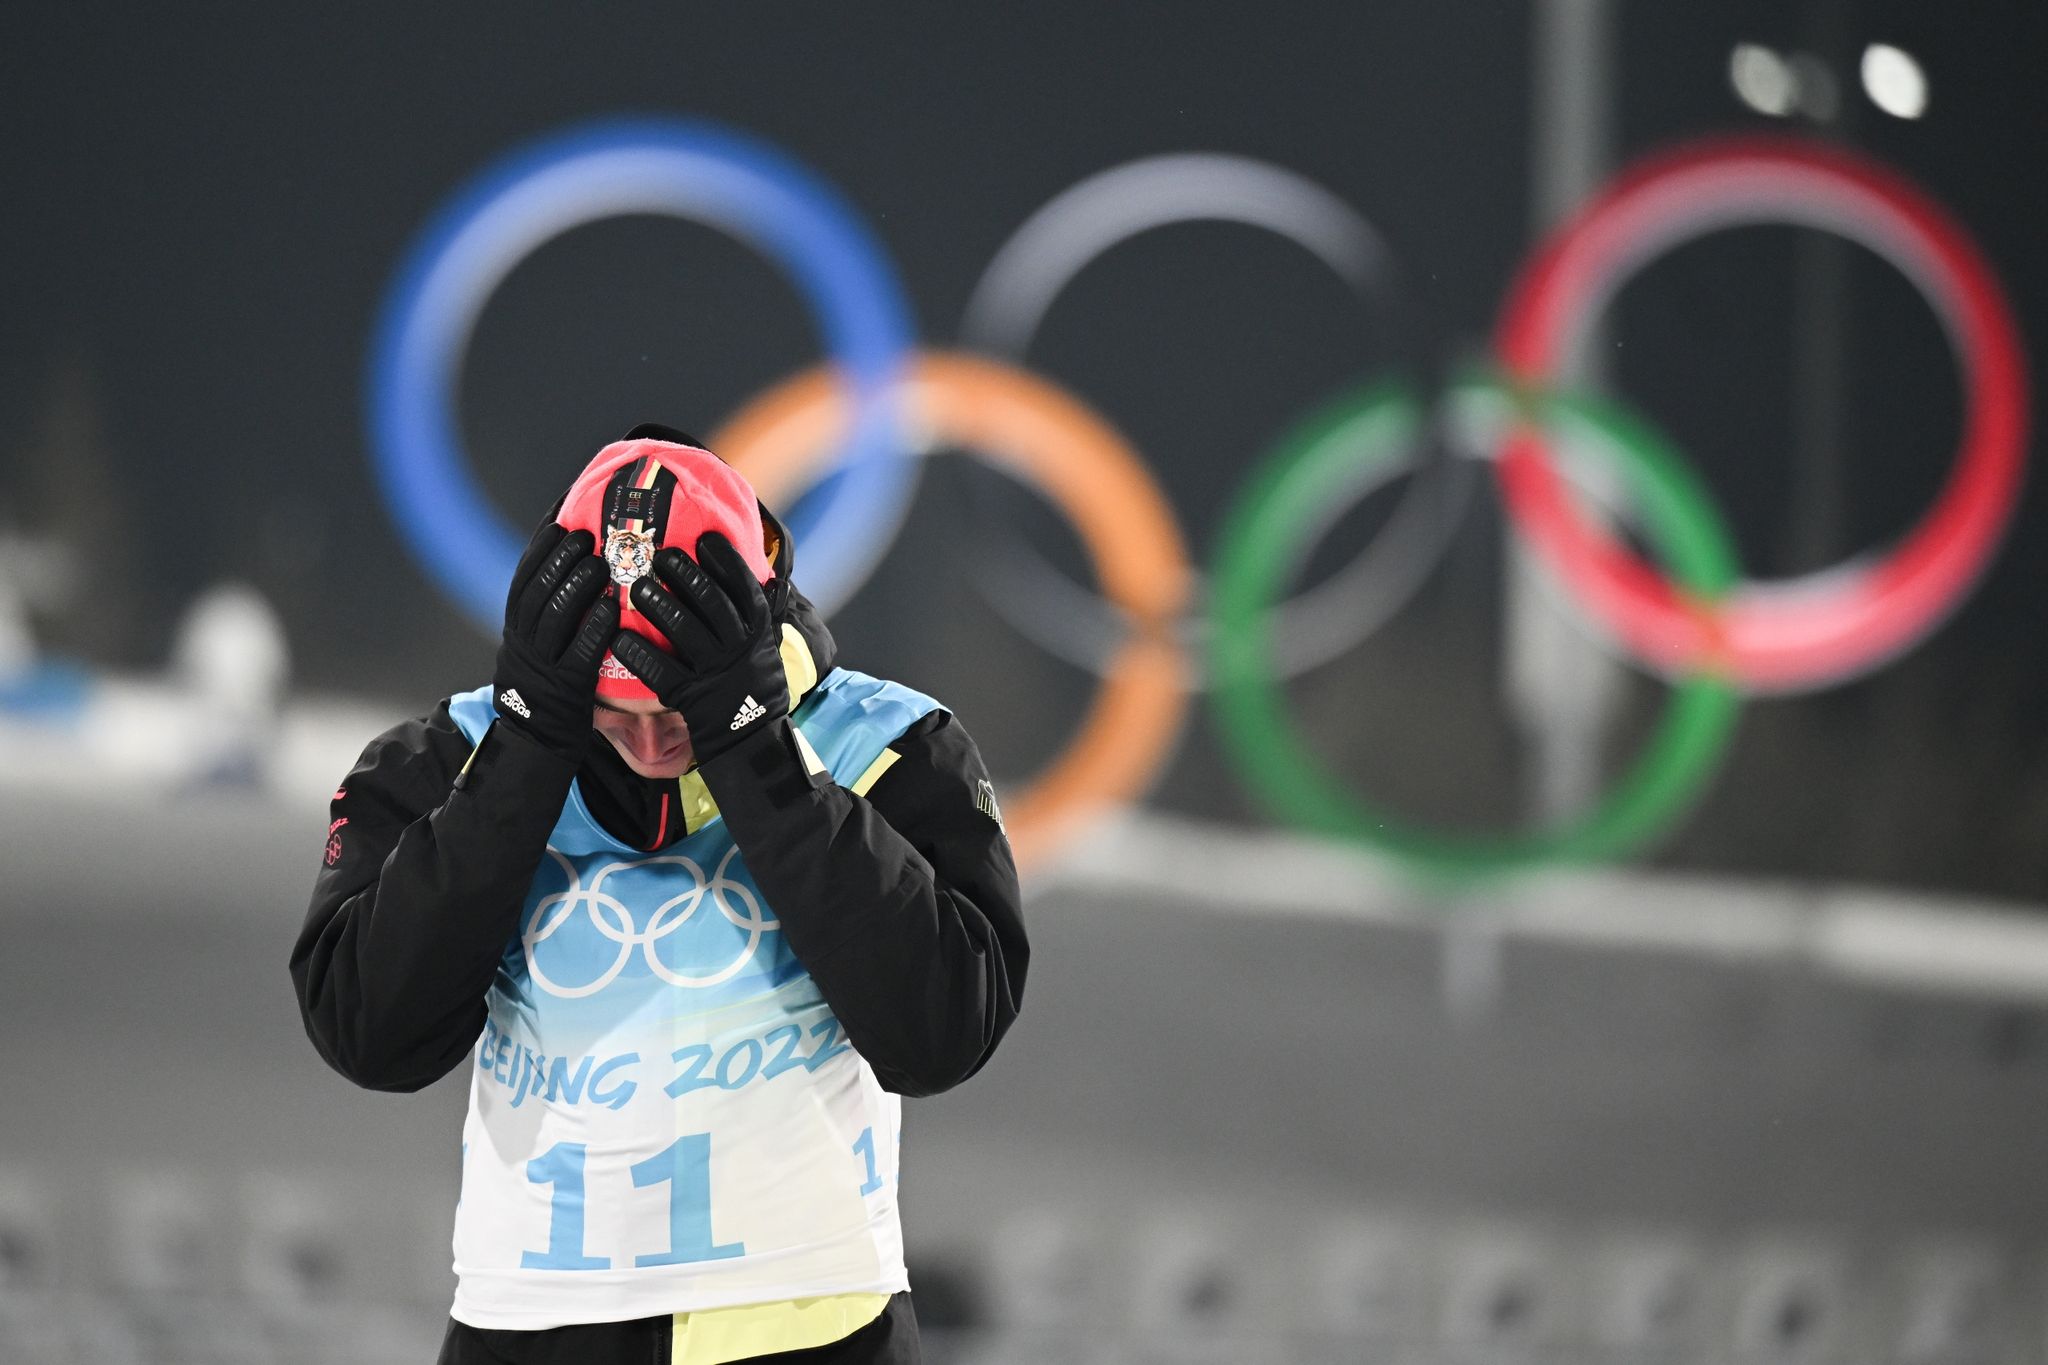 Olympiasieger Vinzenz Geiger sieht die Pläne des IOC kritisch. (© Hendrik Schmidt/dpa)